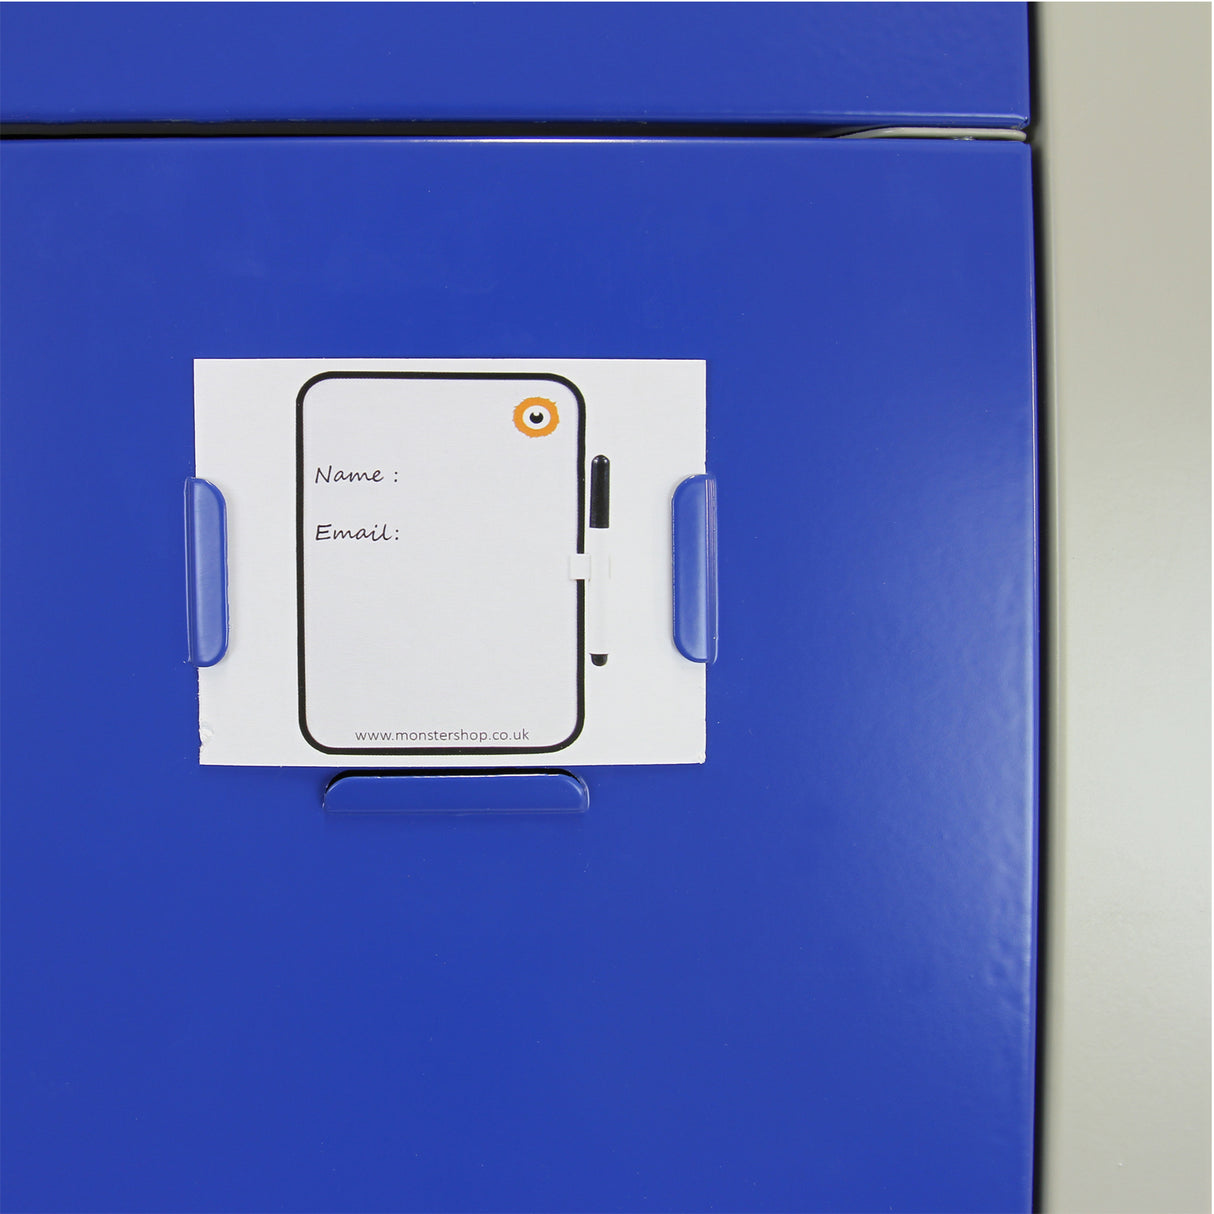 Metal Storage Lockers - Three Doors, Flatpacked, Blue